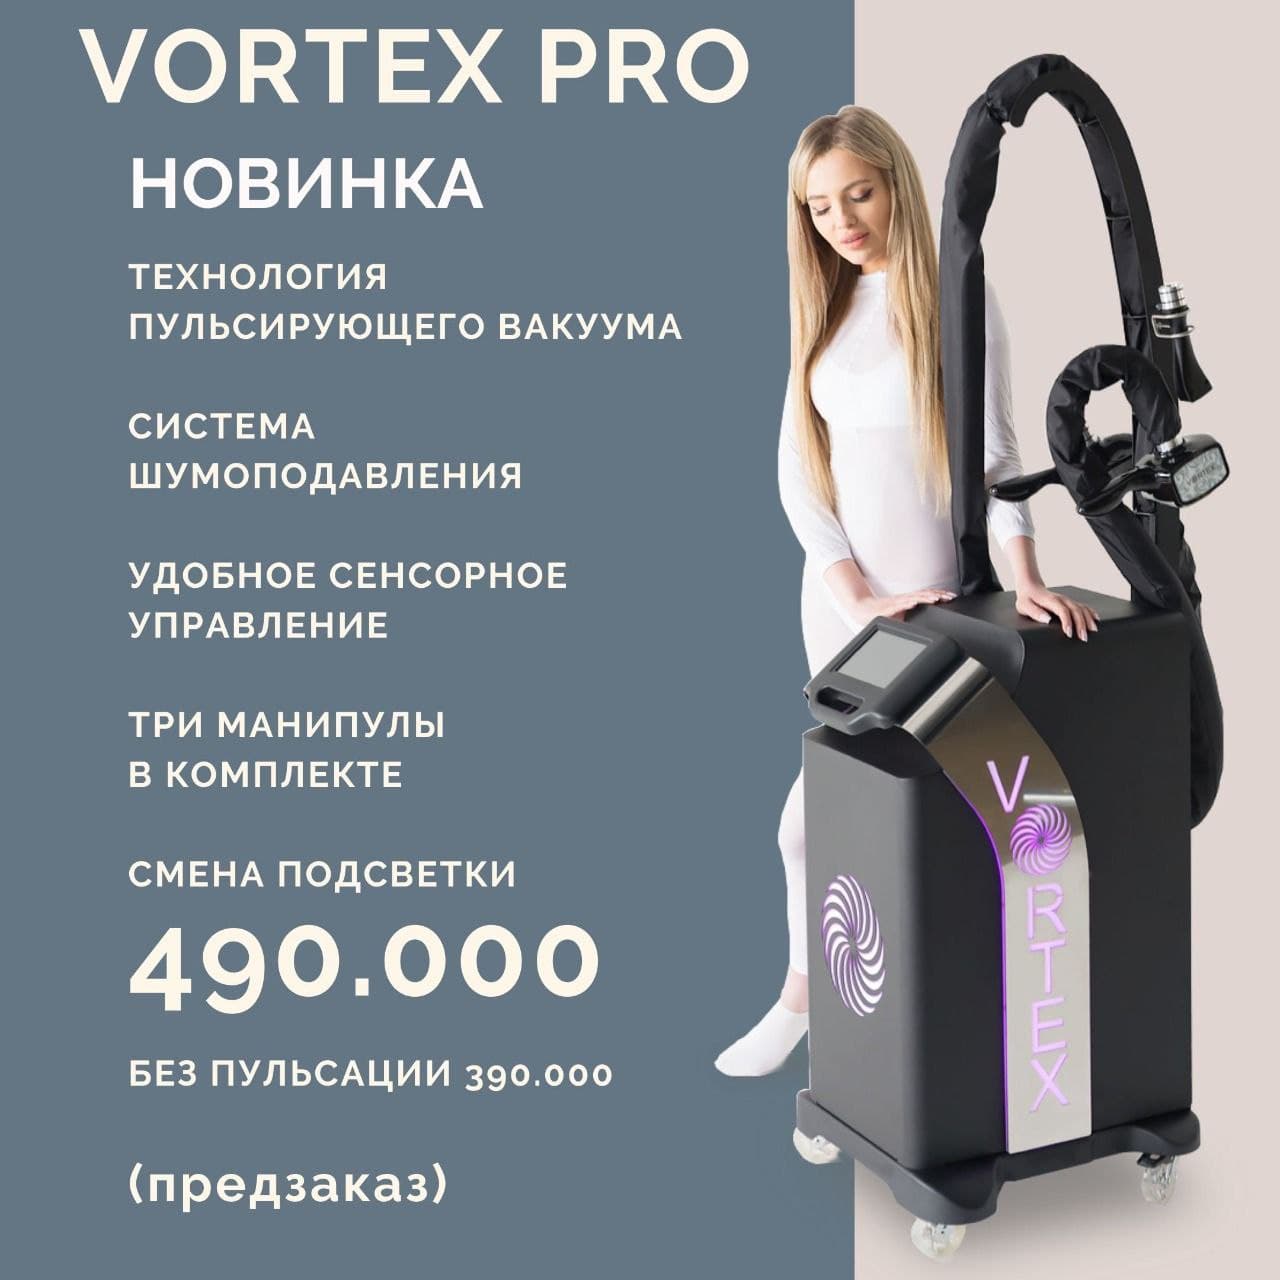 Vortex Pro